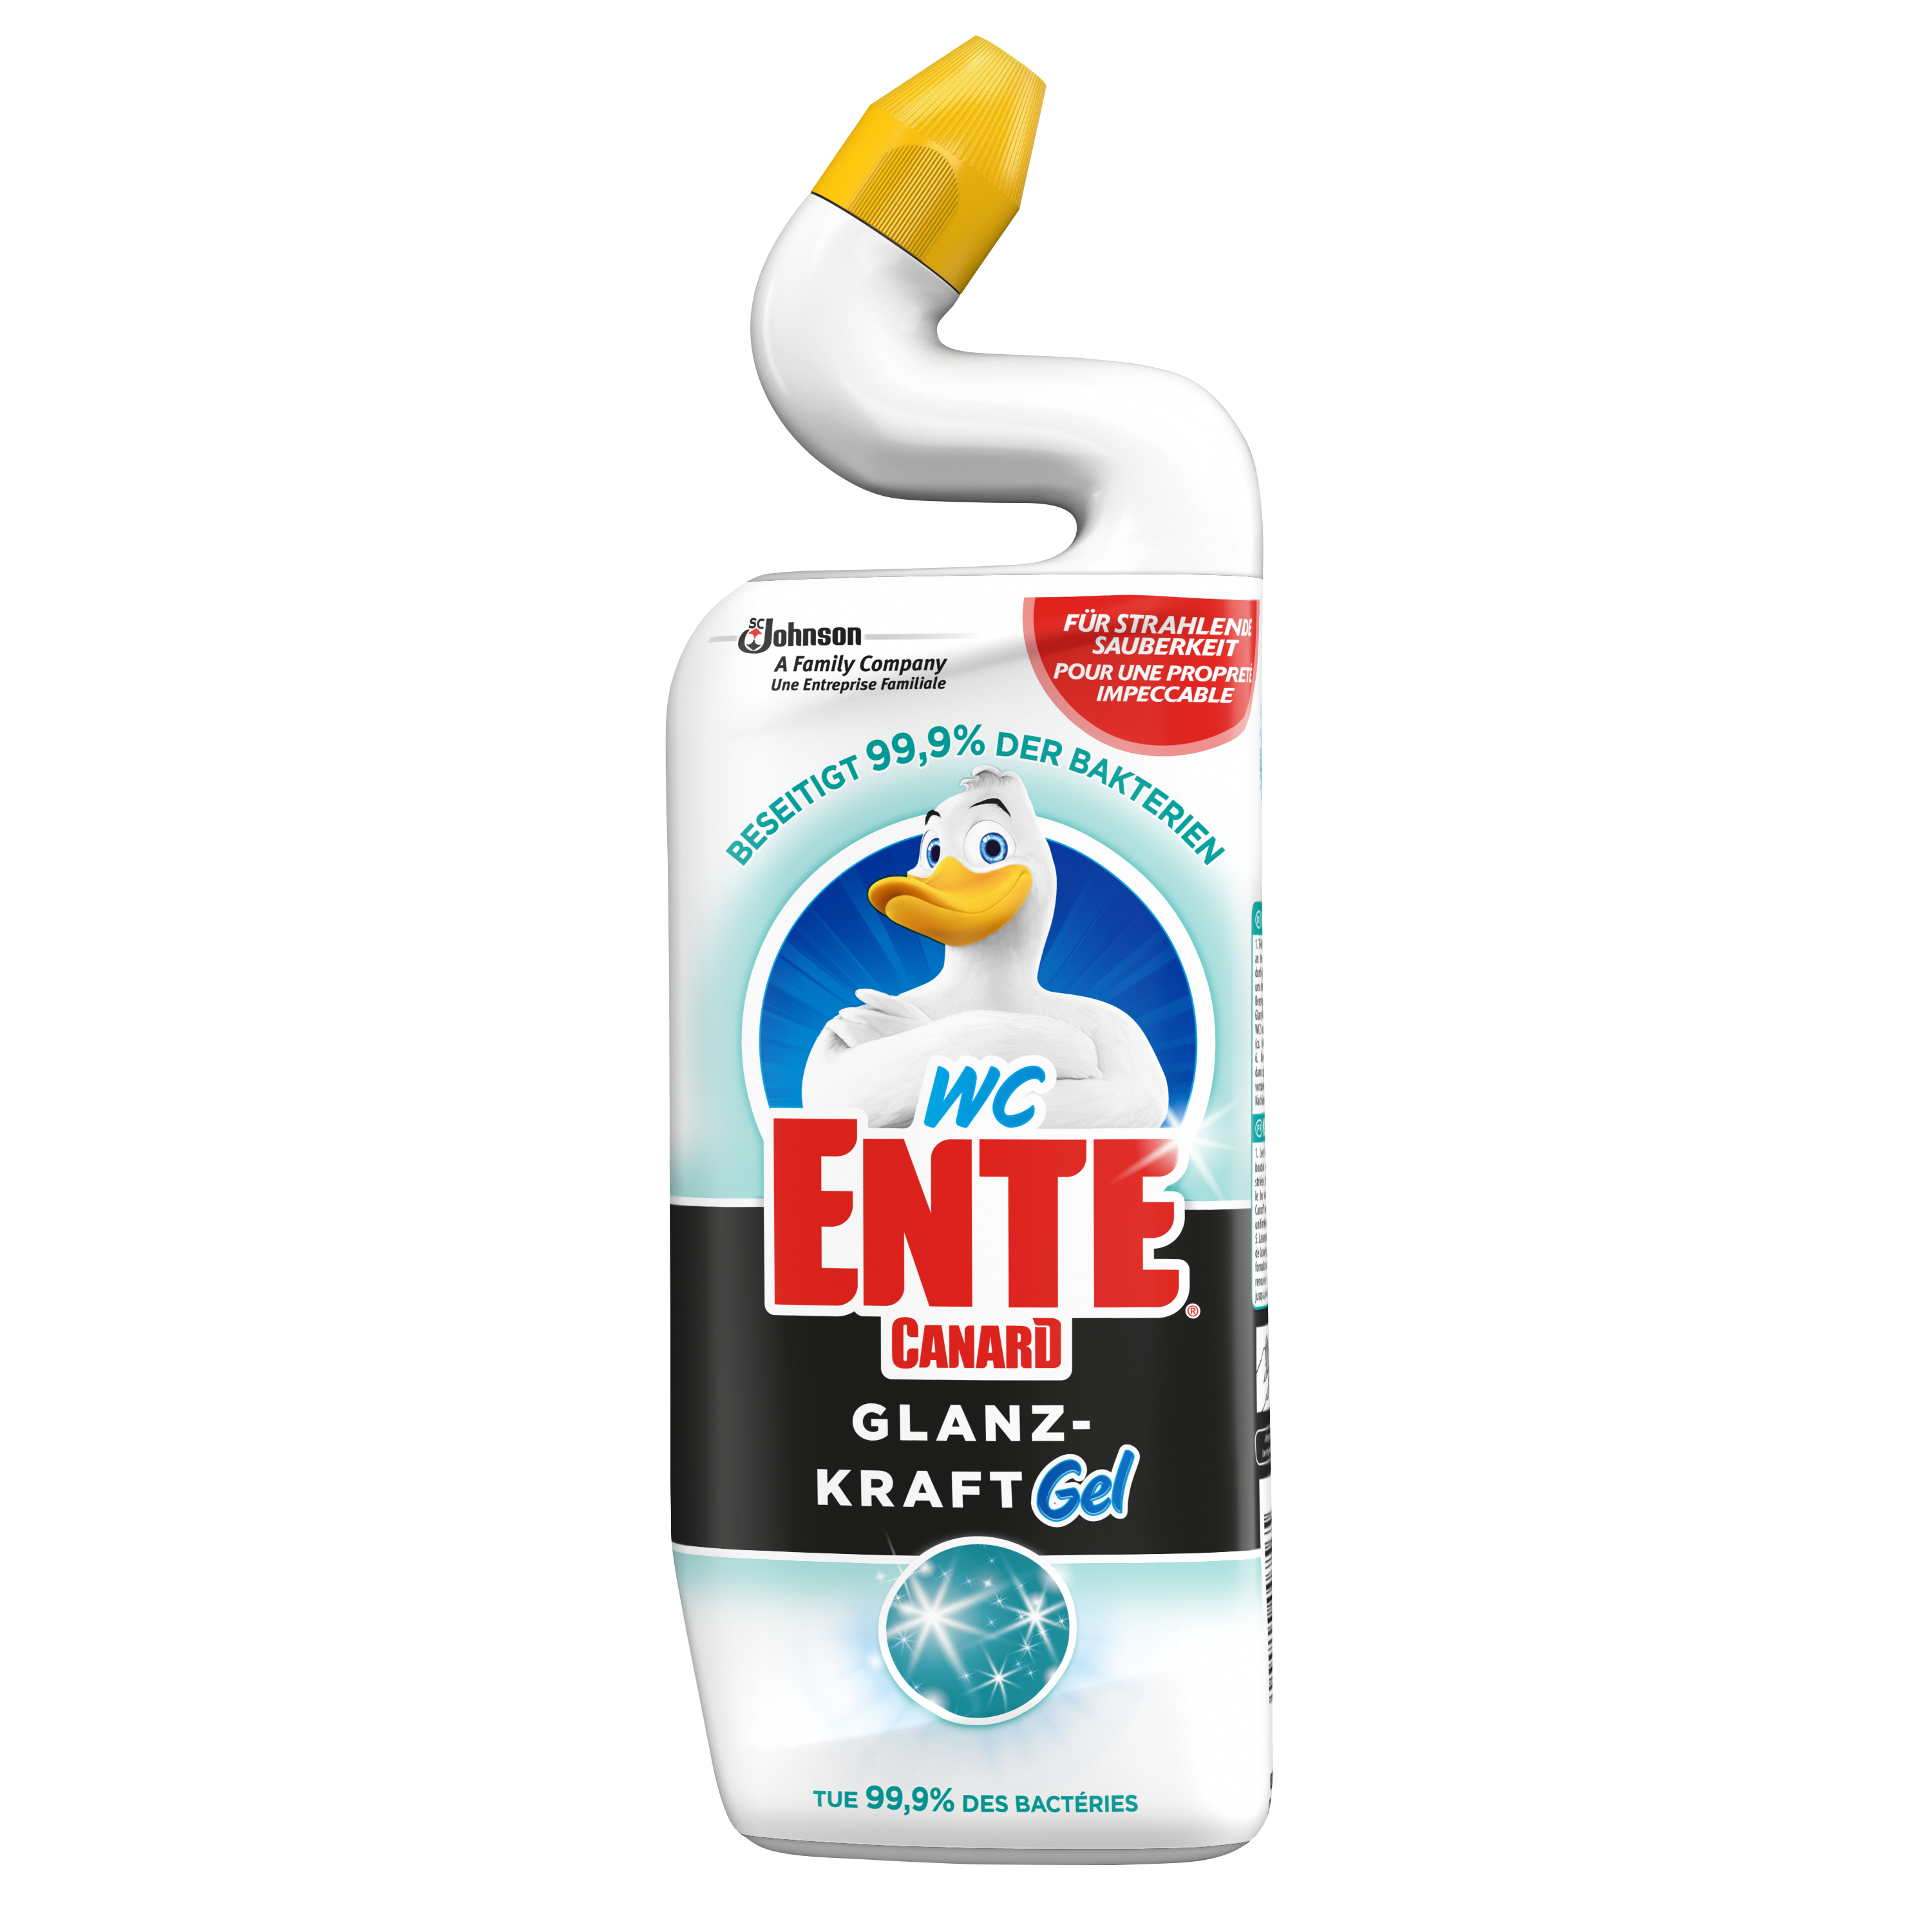 WC-Ente® Glanz-Kraft Gel